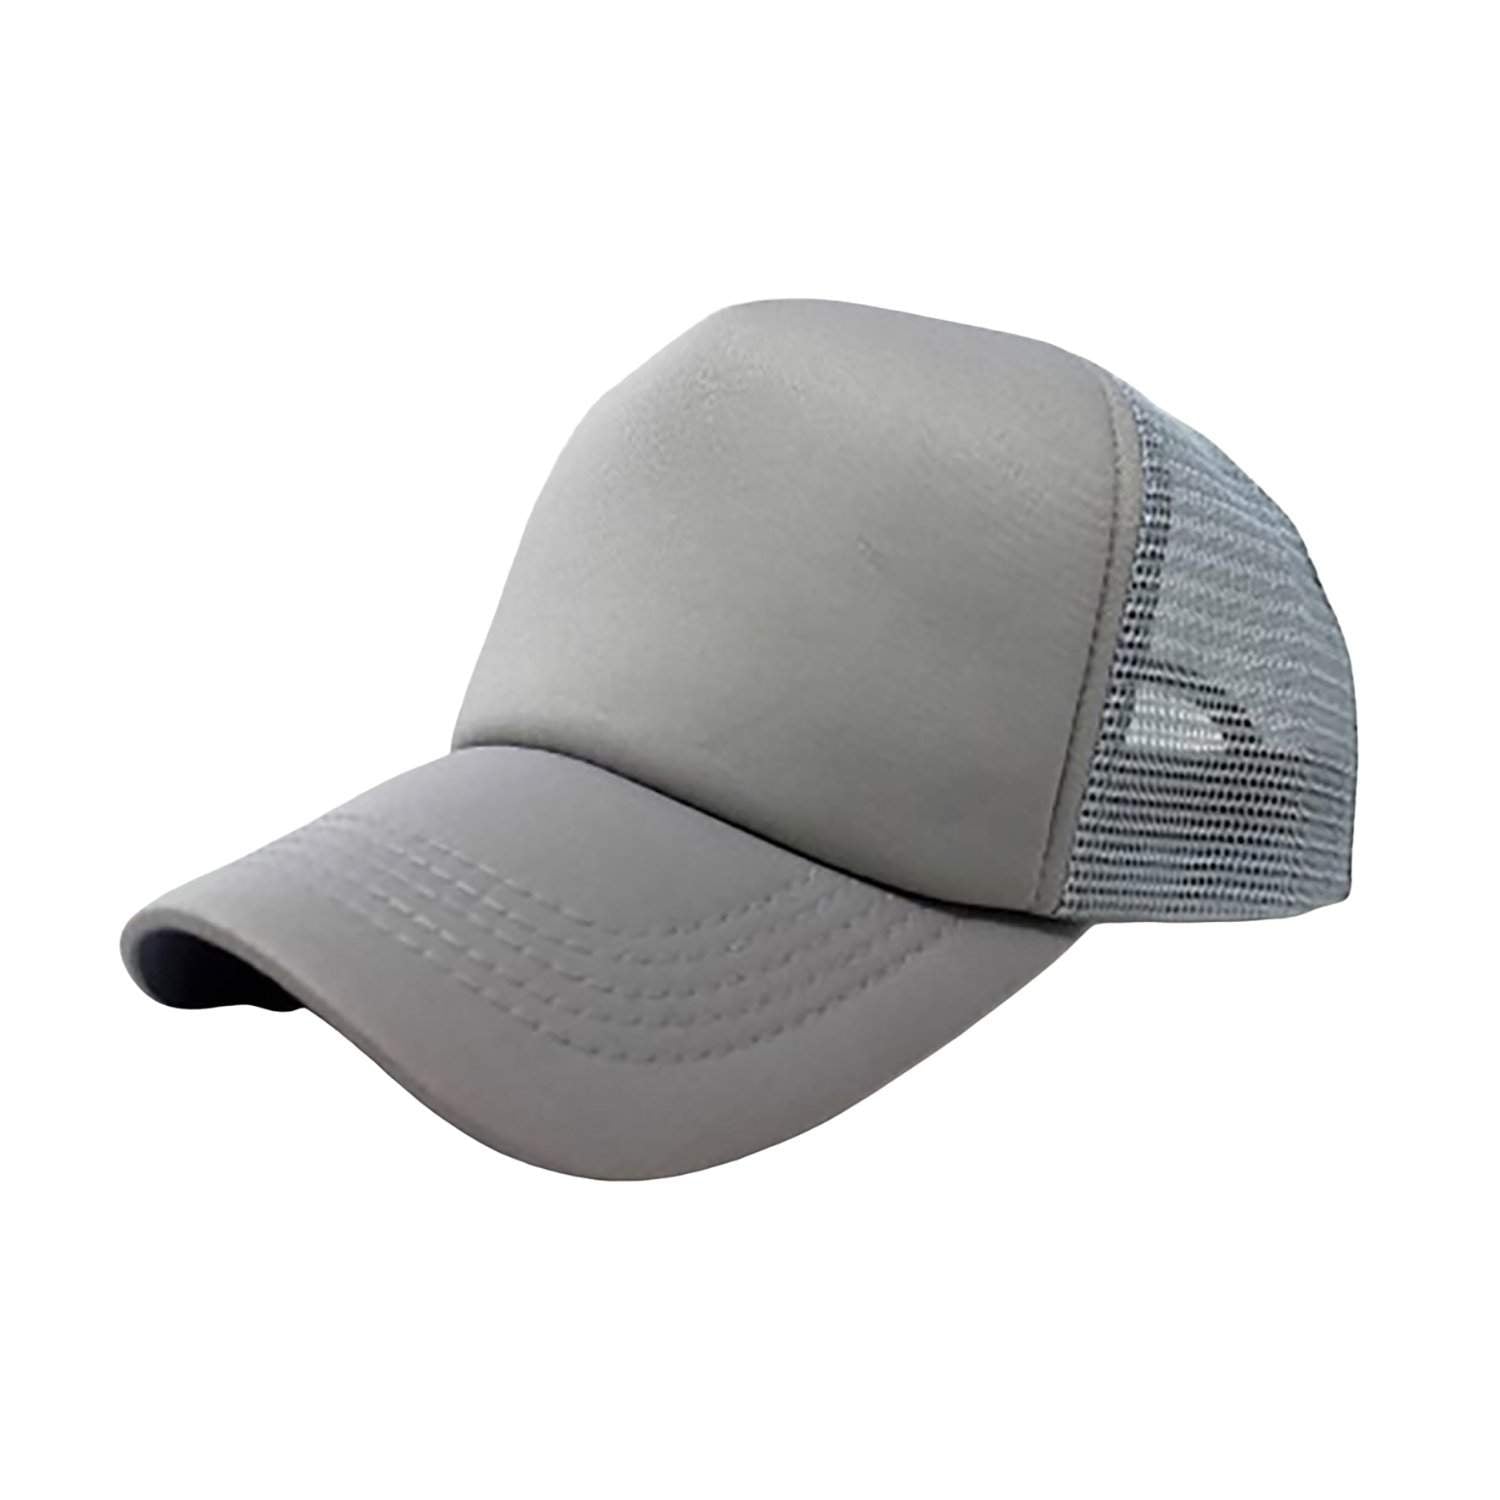 6-Pack Trucker Hat Adjustable Cap